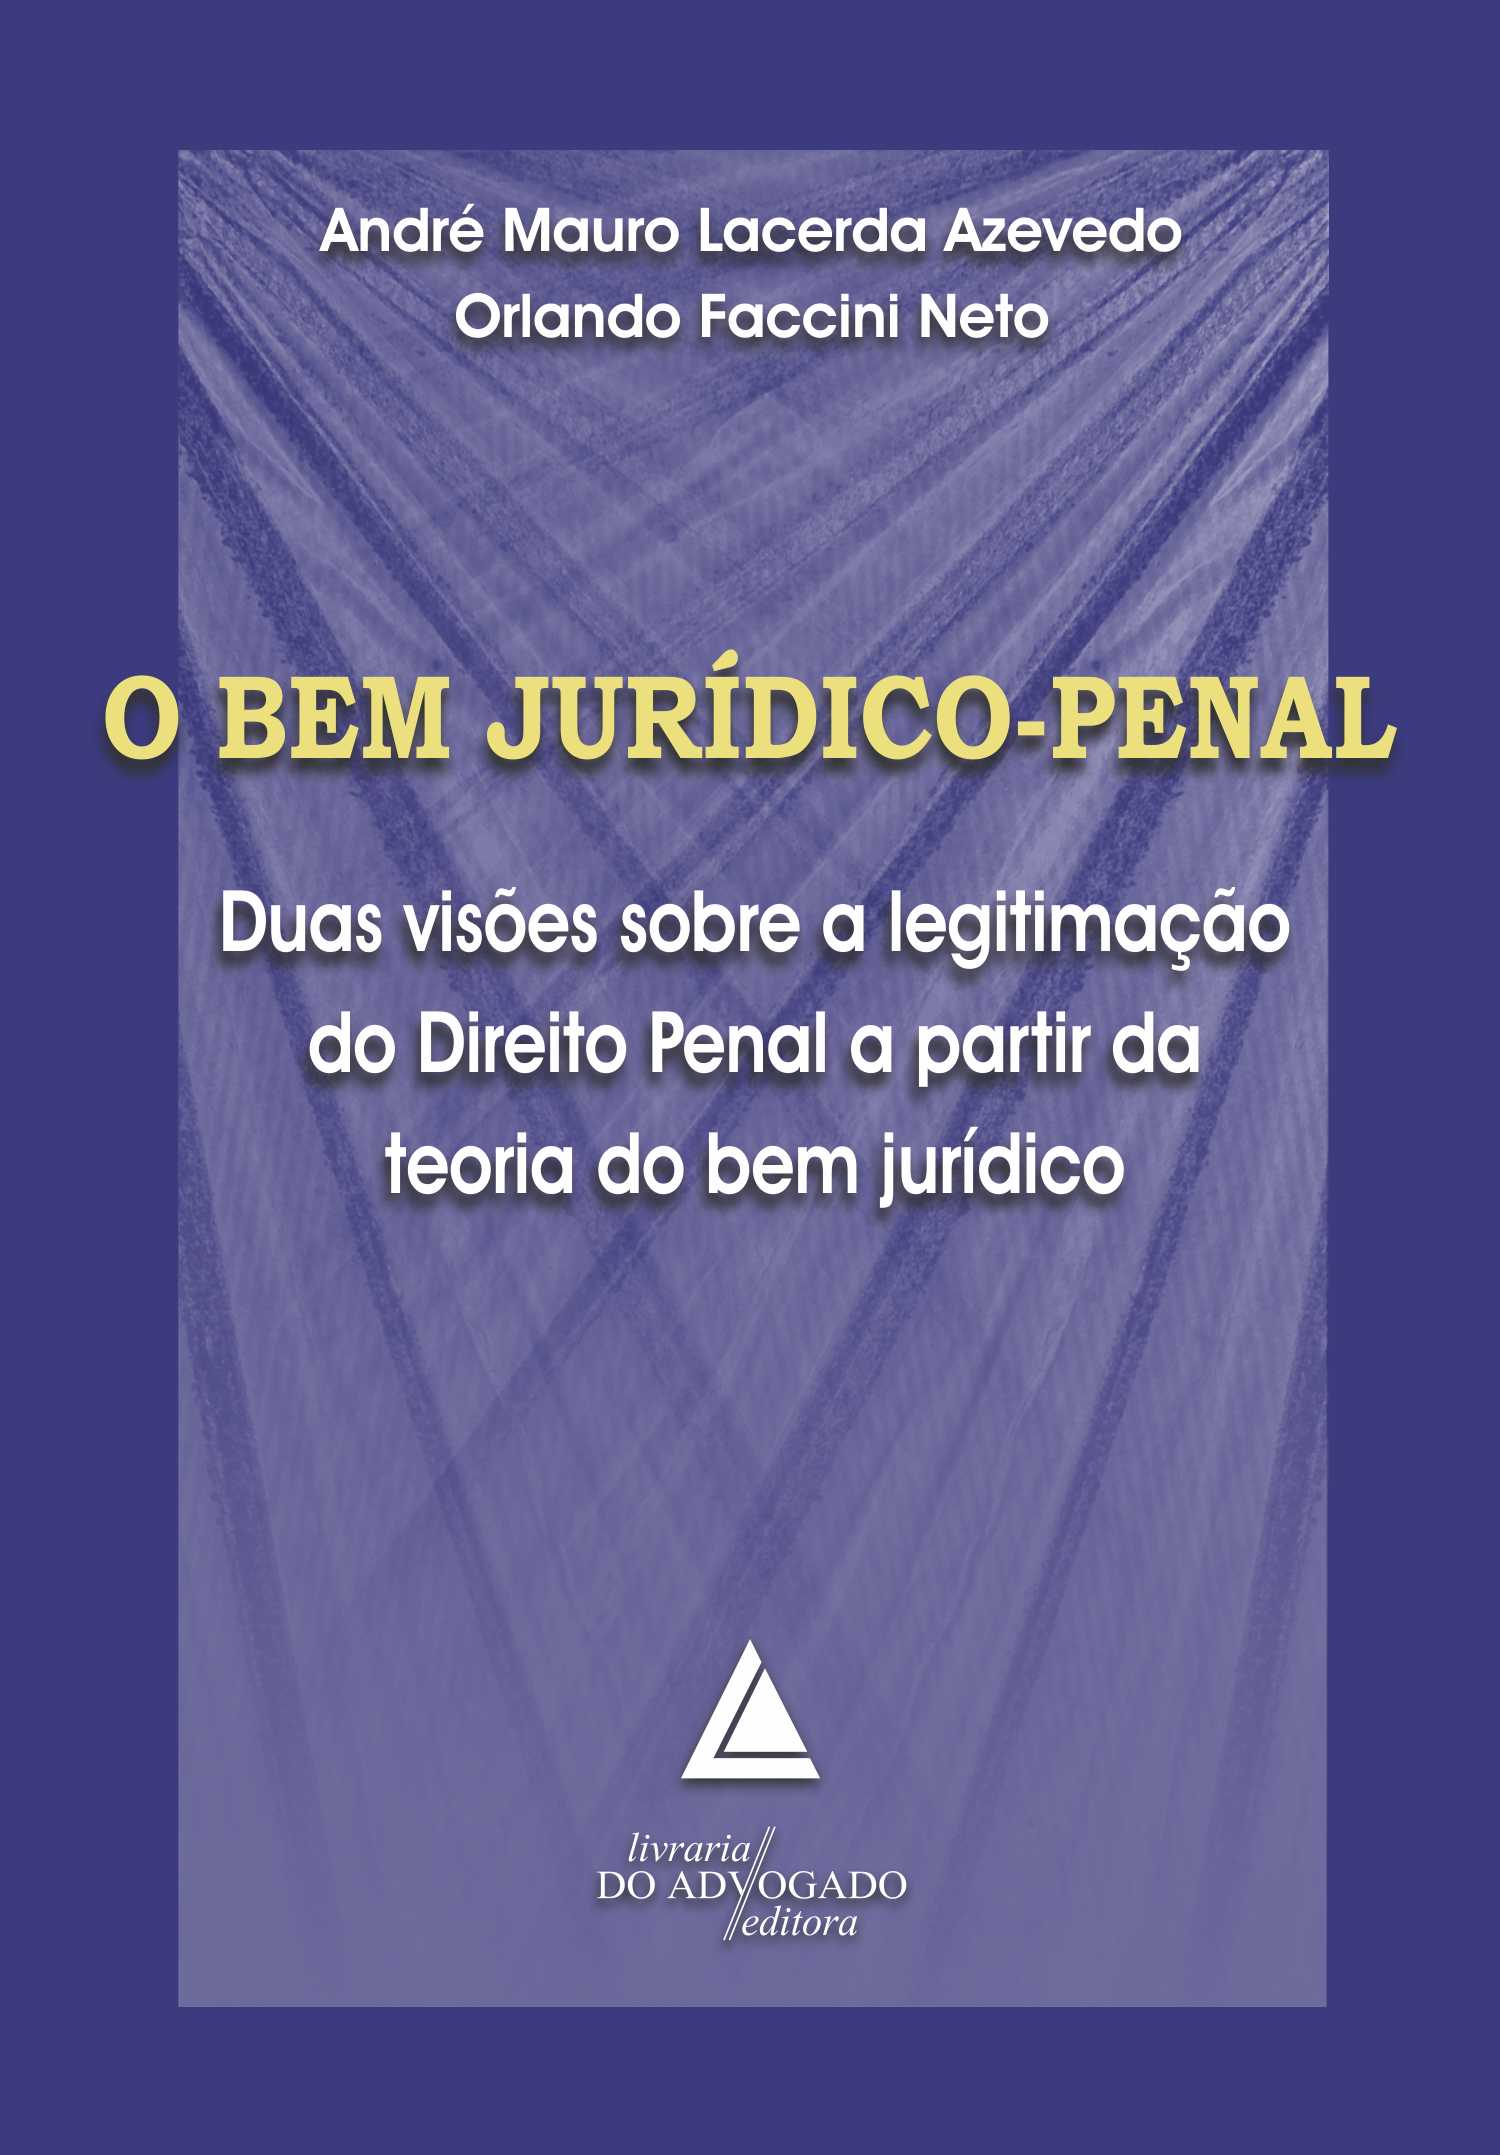 BEM JURIDICO-PENAL, O